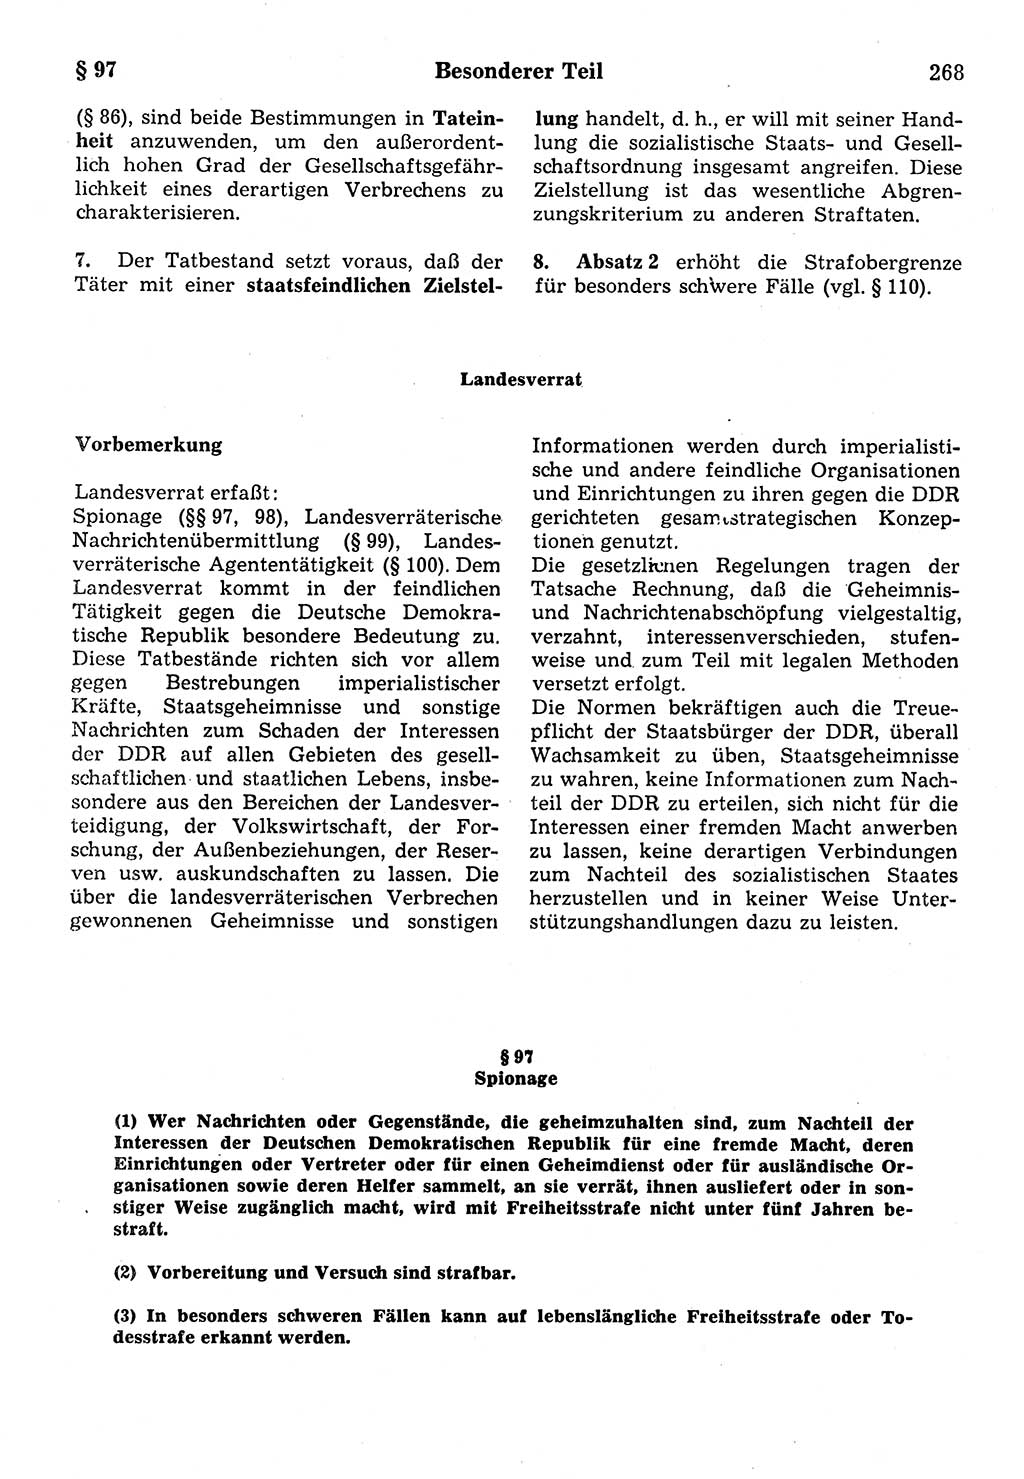 Strafrecht der Deutschen Demokratischen Republik (DDR), Kommentar zum Strafgesetzbuch (StGB) 1987, Seite 268 (Strafr. DDR Komm. StGB 1987, S. 268)